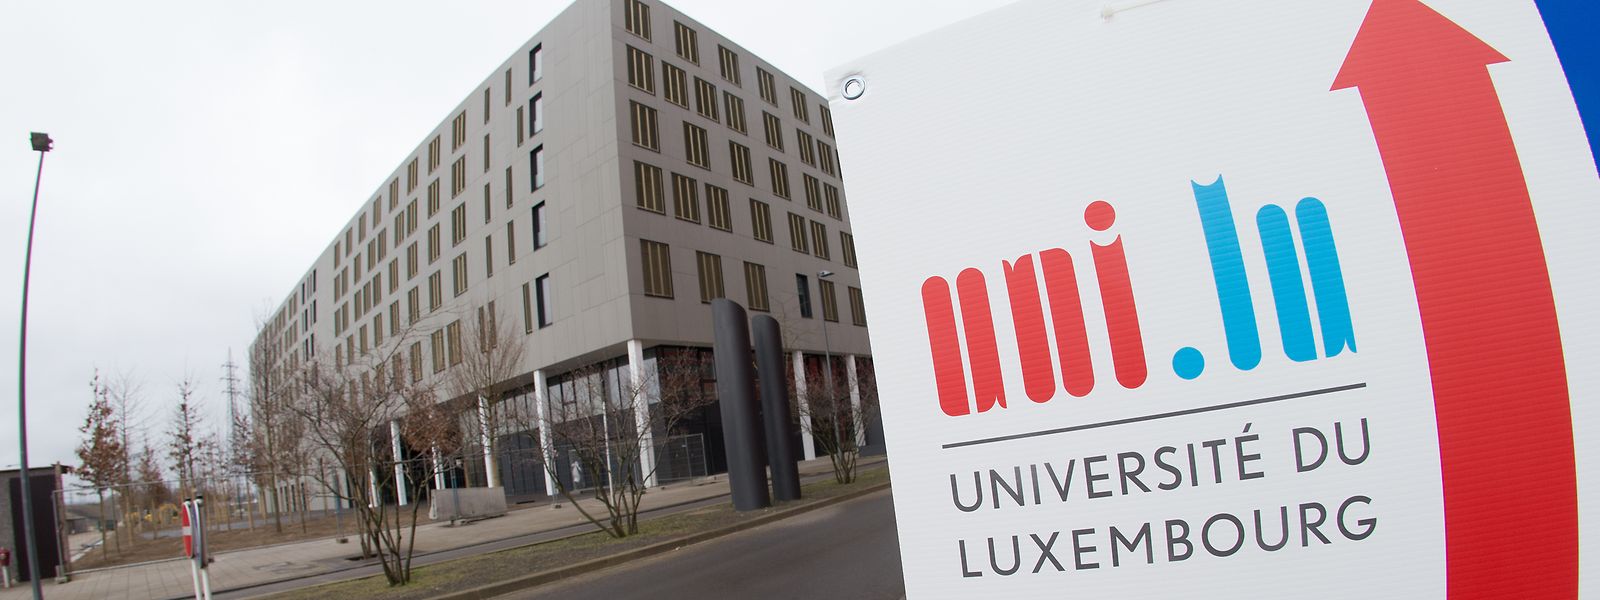 Die Universität Luxemburg kann bereits den zweiten Aufstieg innerhalb weniger Wochen für sich verbuchen.